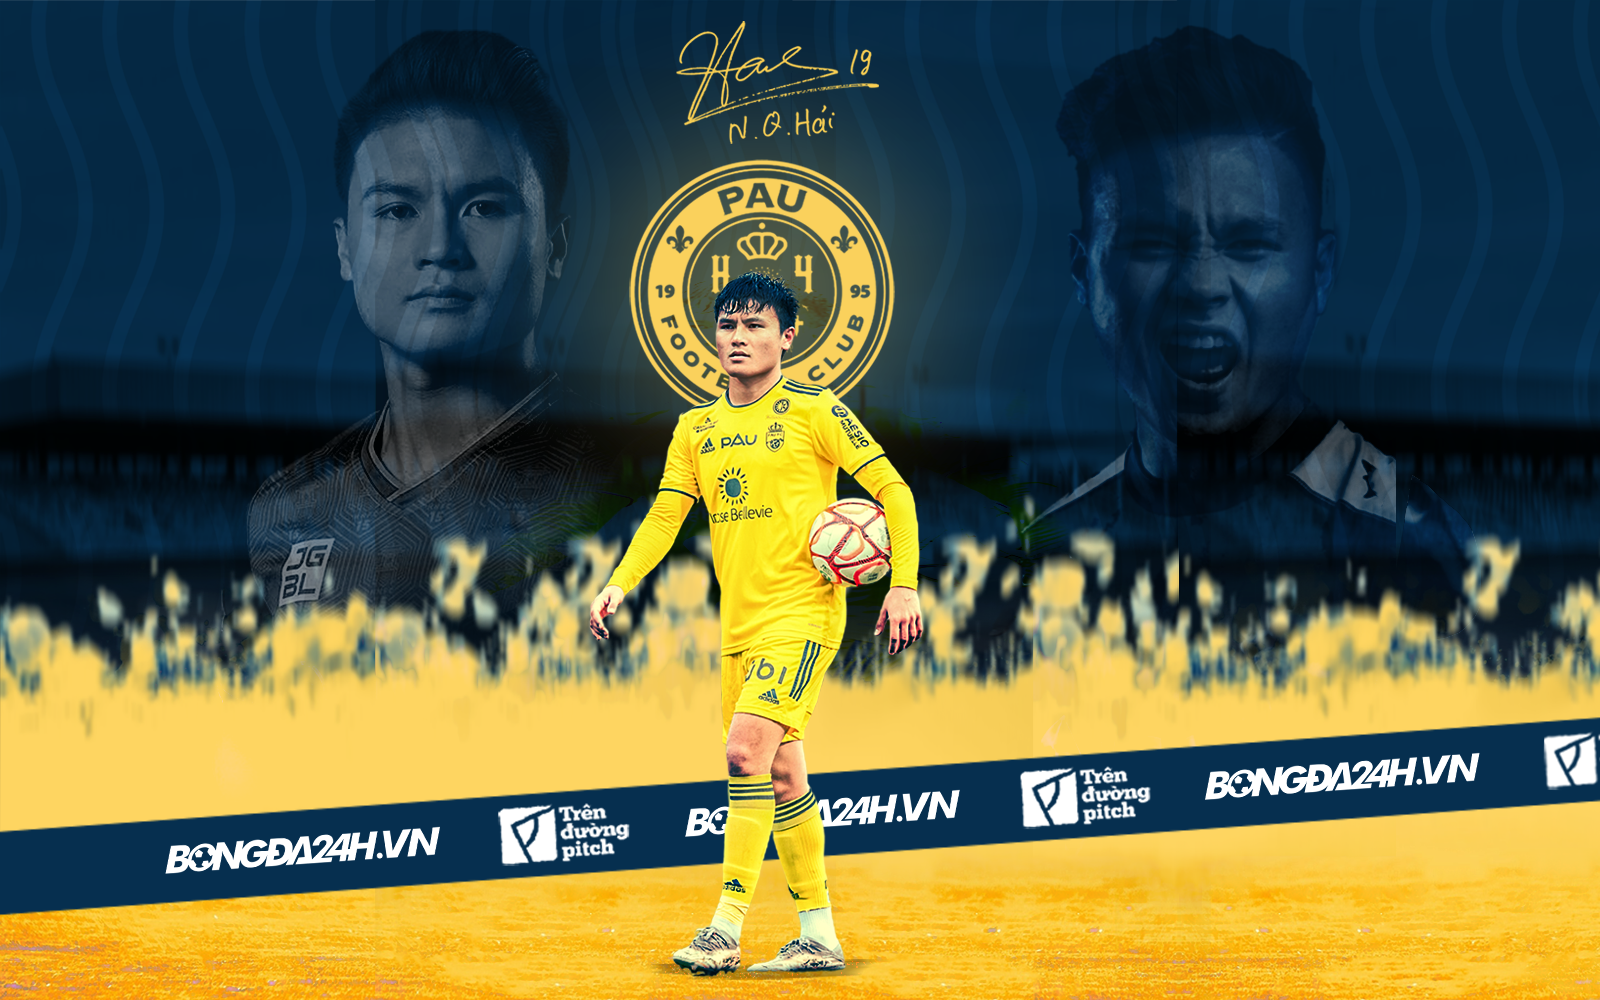 On Sports   ASIAN CUP 2019 SẼ LÀ CƠ HỘI ĐỂ QUANG HẢI  Facebook